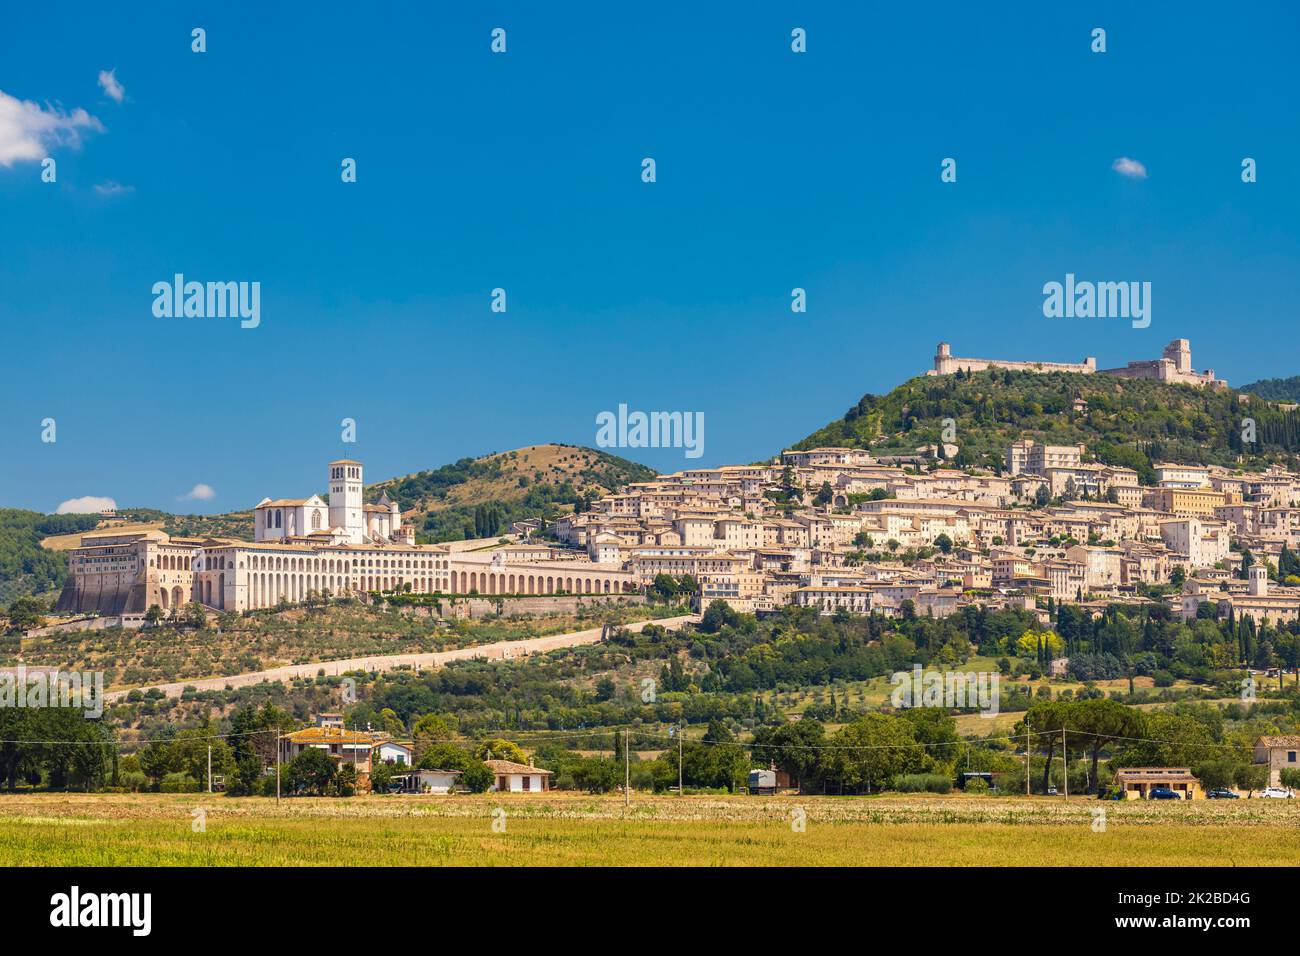 Vue panoramique ville médiévale d'Assise, province de Pérouse, région de l'Ombrie, Italie Banque D'Images